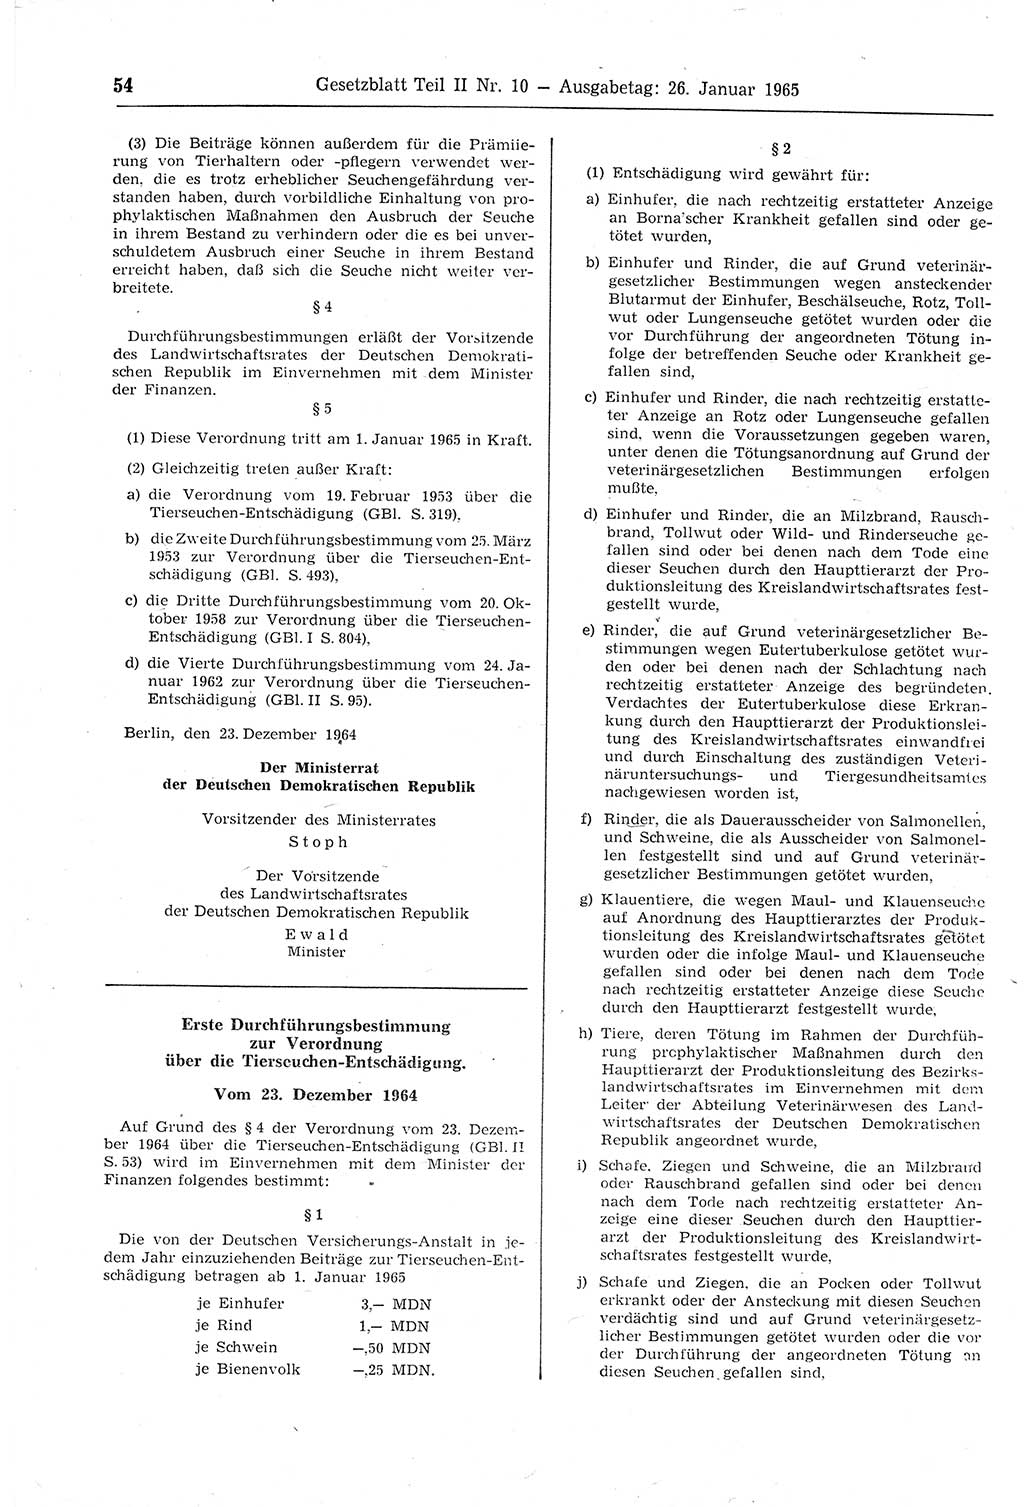 Gesetzblatt (GBl.) der Deutschen Demokratischen Republik (DDR) Teil ⅠⅠ 1965, Seite 54 (GBl. DDR ⅠⅠ 1965, S. 54)